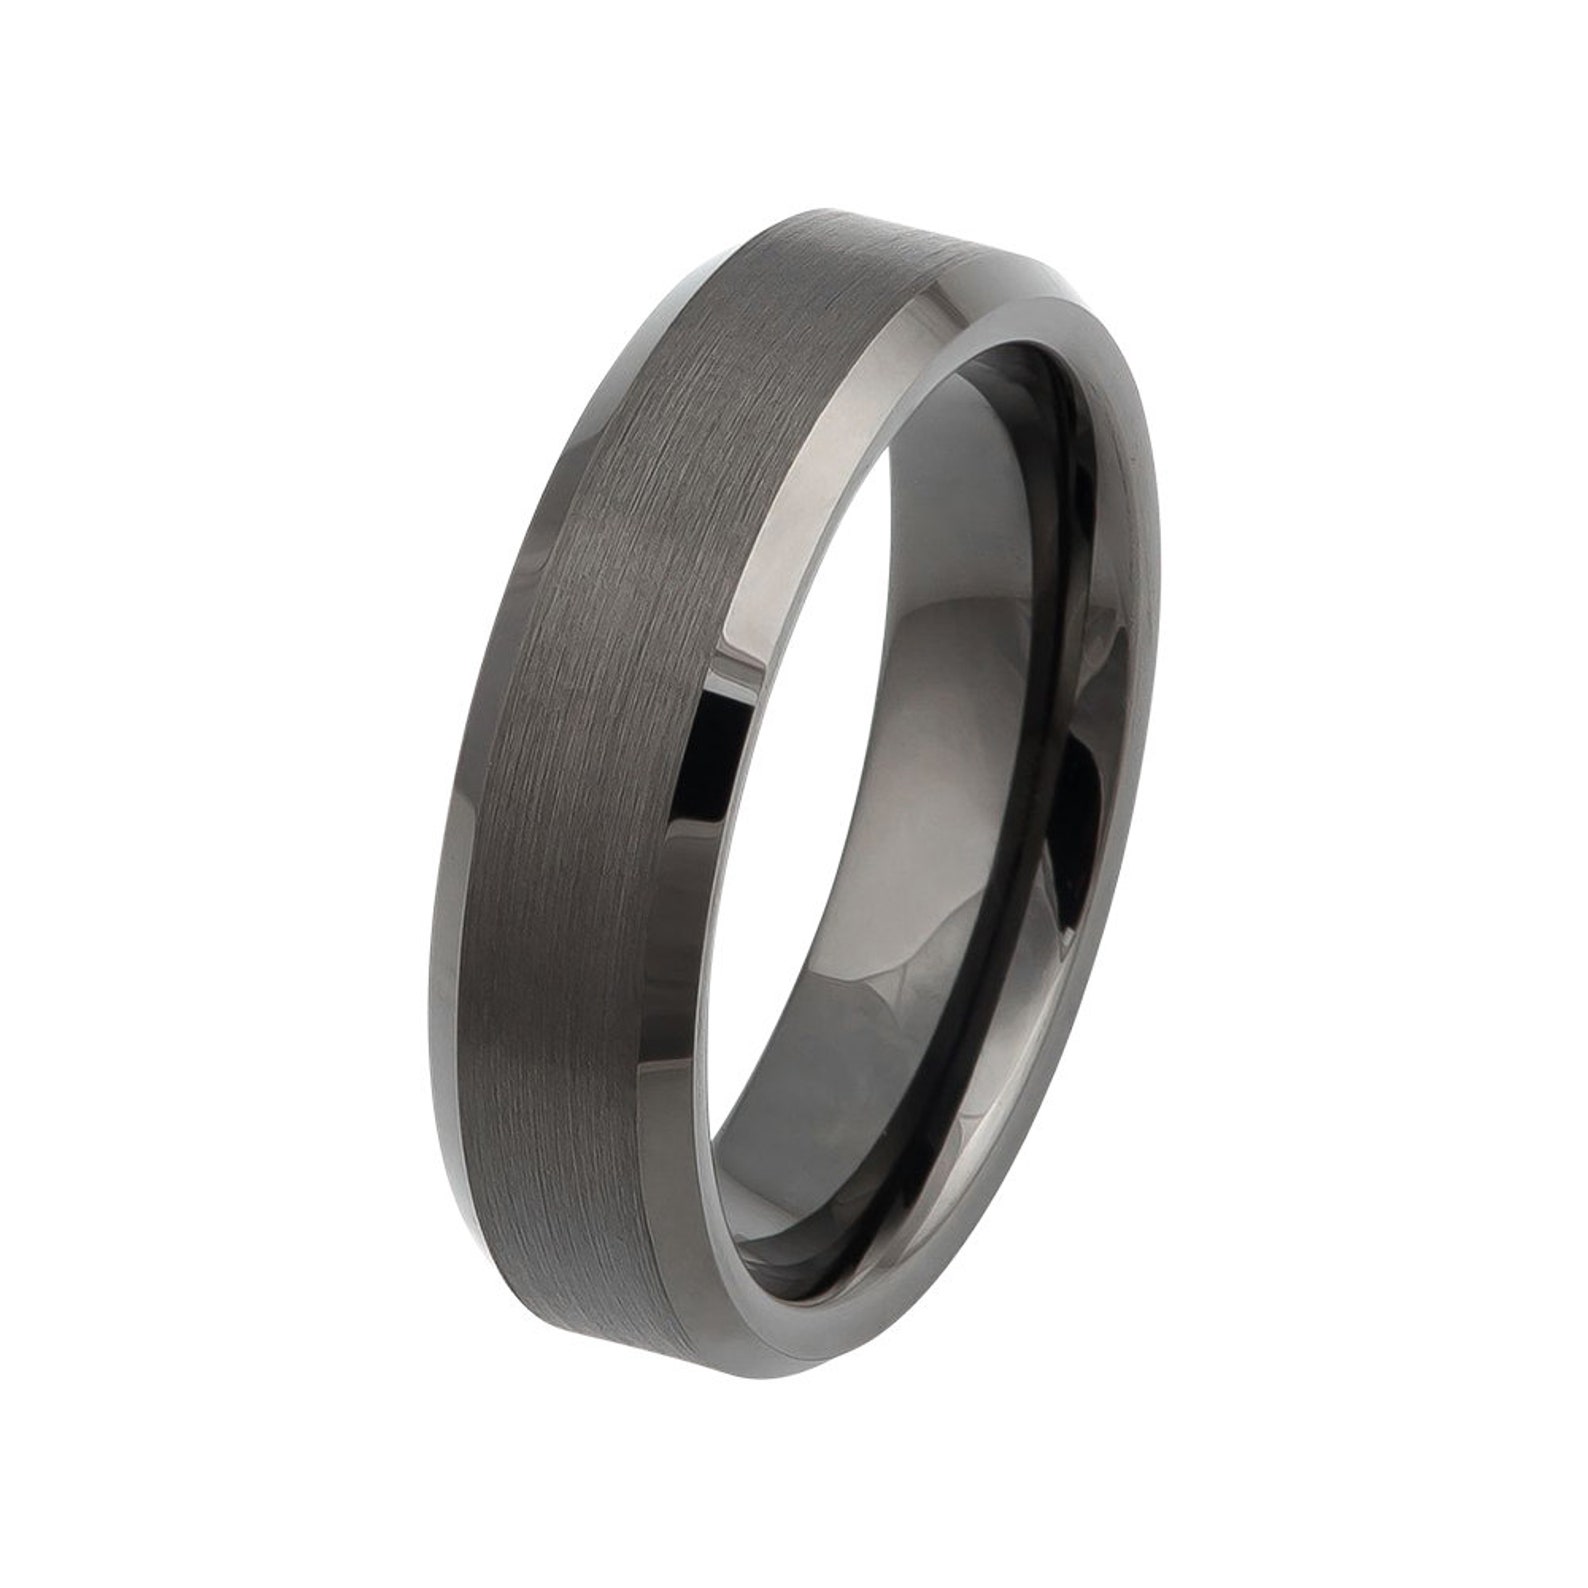 Black Tungsten Ring Brushed Gunmetal Wedding Band 6mm